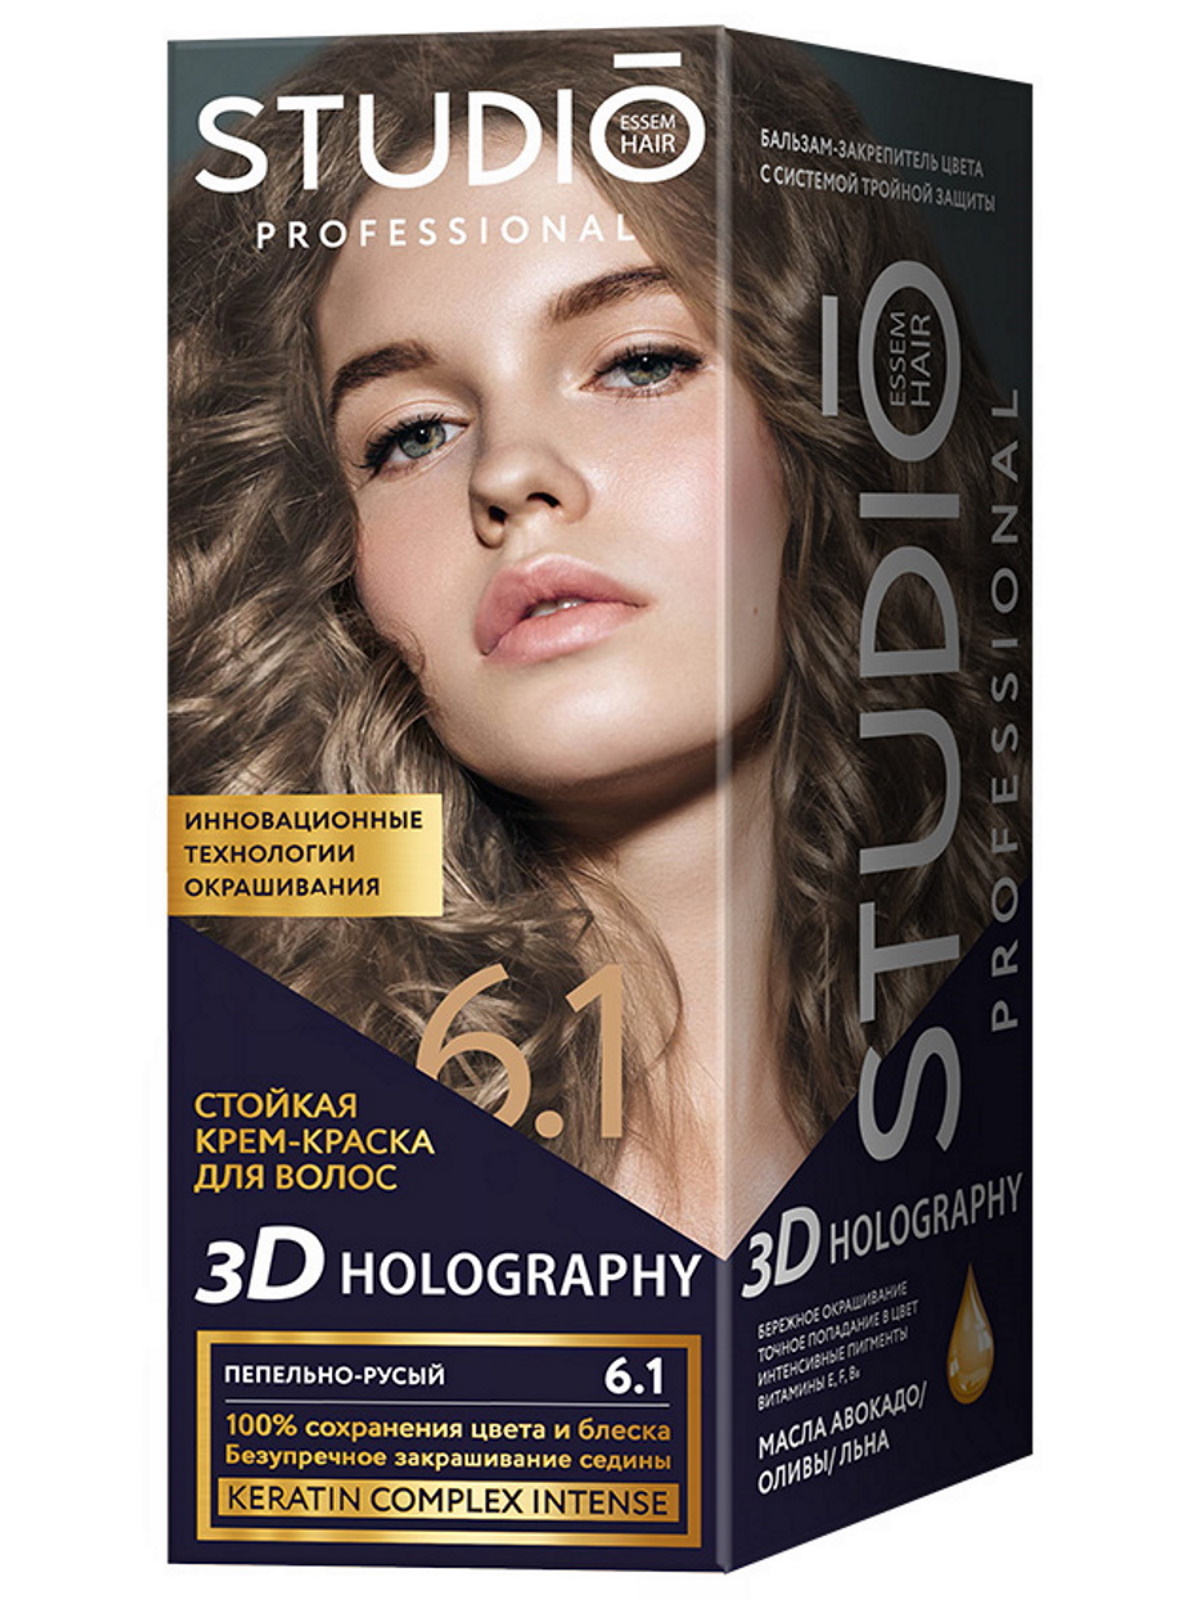 Комплект 3D HOLOGRAPHY STUDIO PROFESSIONAL 6.1 пепельно-русый 2*50+15 мл крем краска для волос студио профешнл 7 16 3d holography графитовый метеор3 упаковки